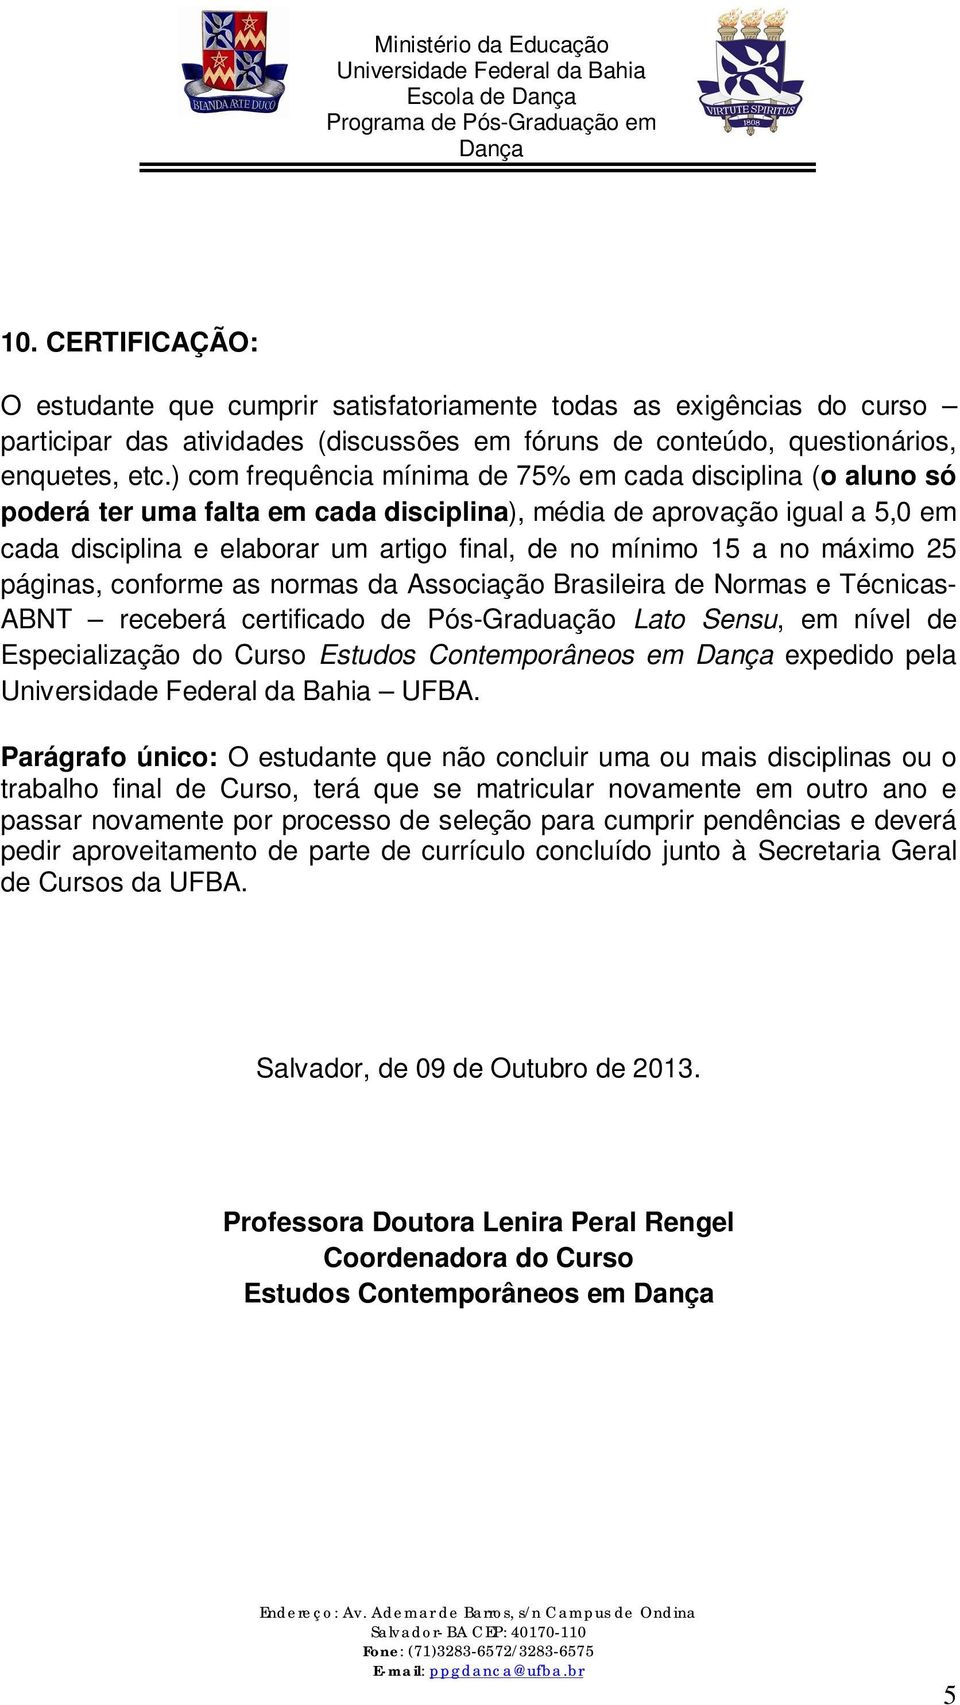 no máximo 25 páginas, conforme as normas da Associação Brasileira de Normas e Técnicas- ABNT receberá certificado de Pós-Graduação Lato Sensu, em nível de Especialização do Curso Estudos